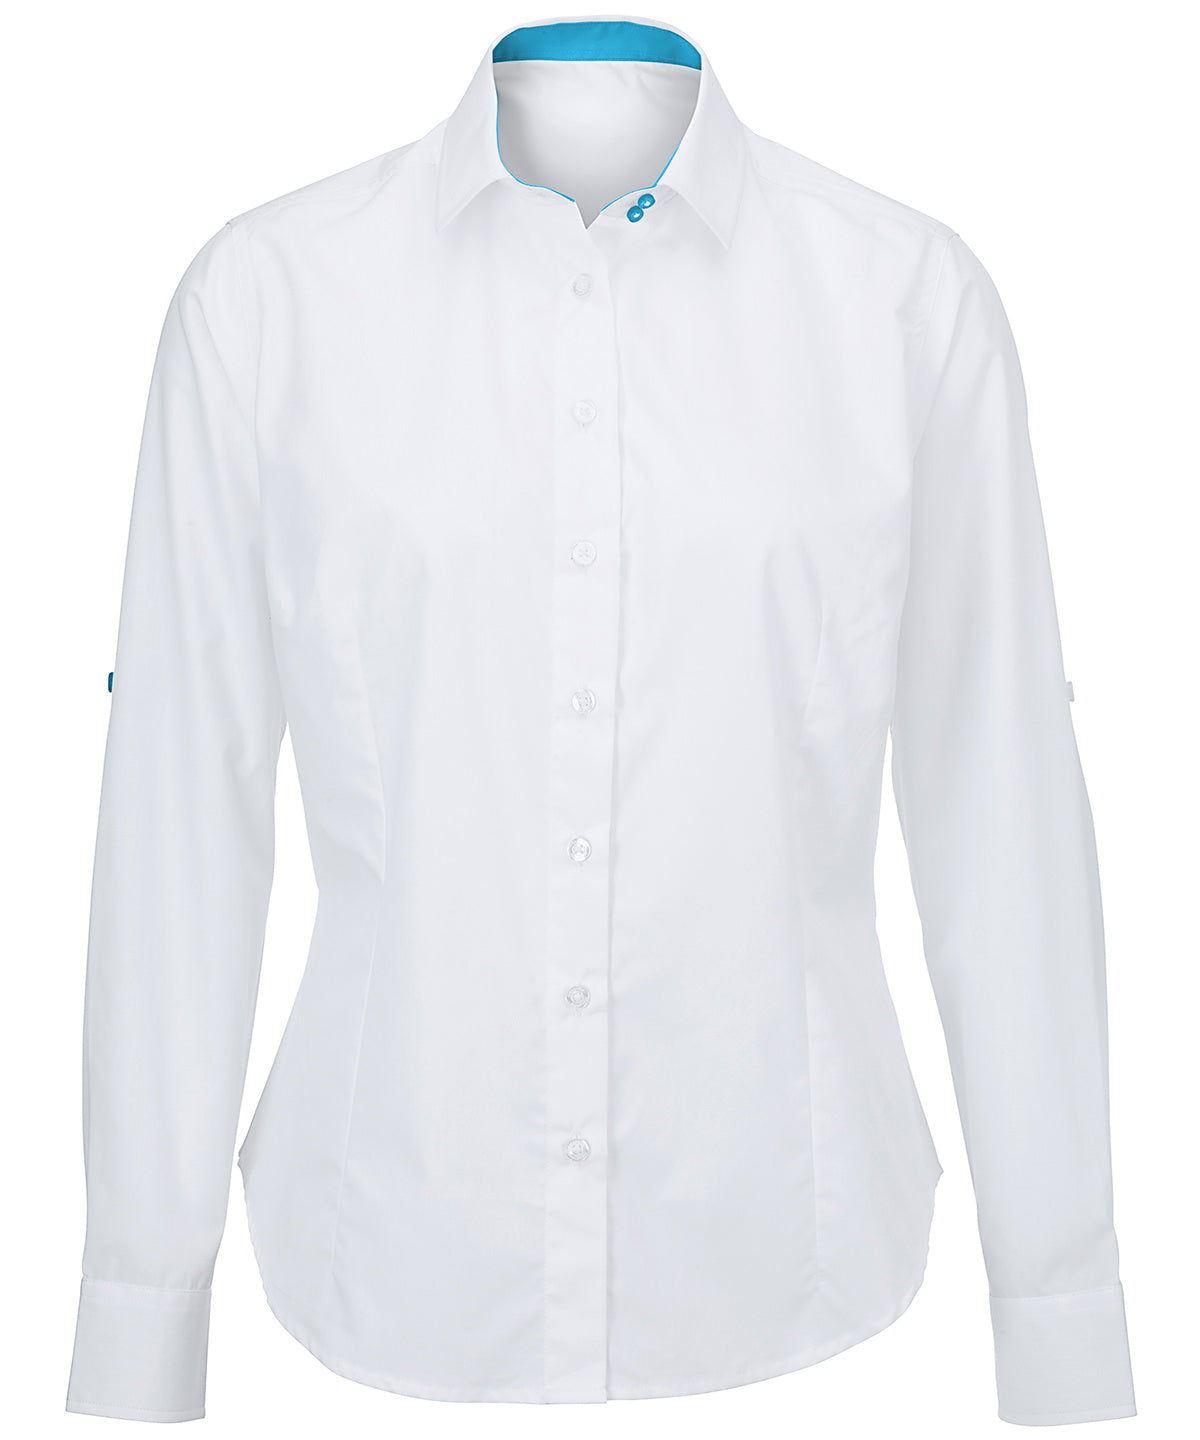 Bolir - Women's White Roll-up Sleeve Shirt (NF521W)